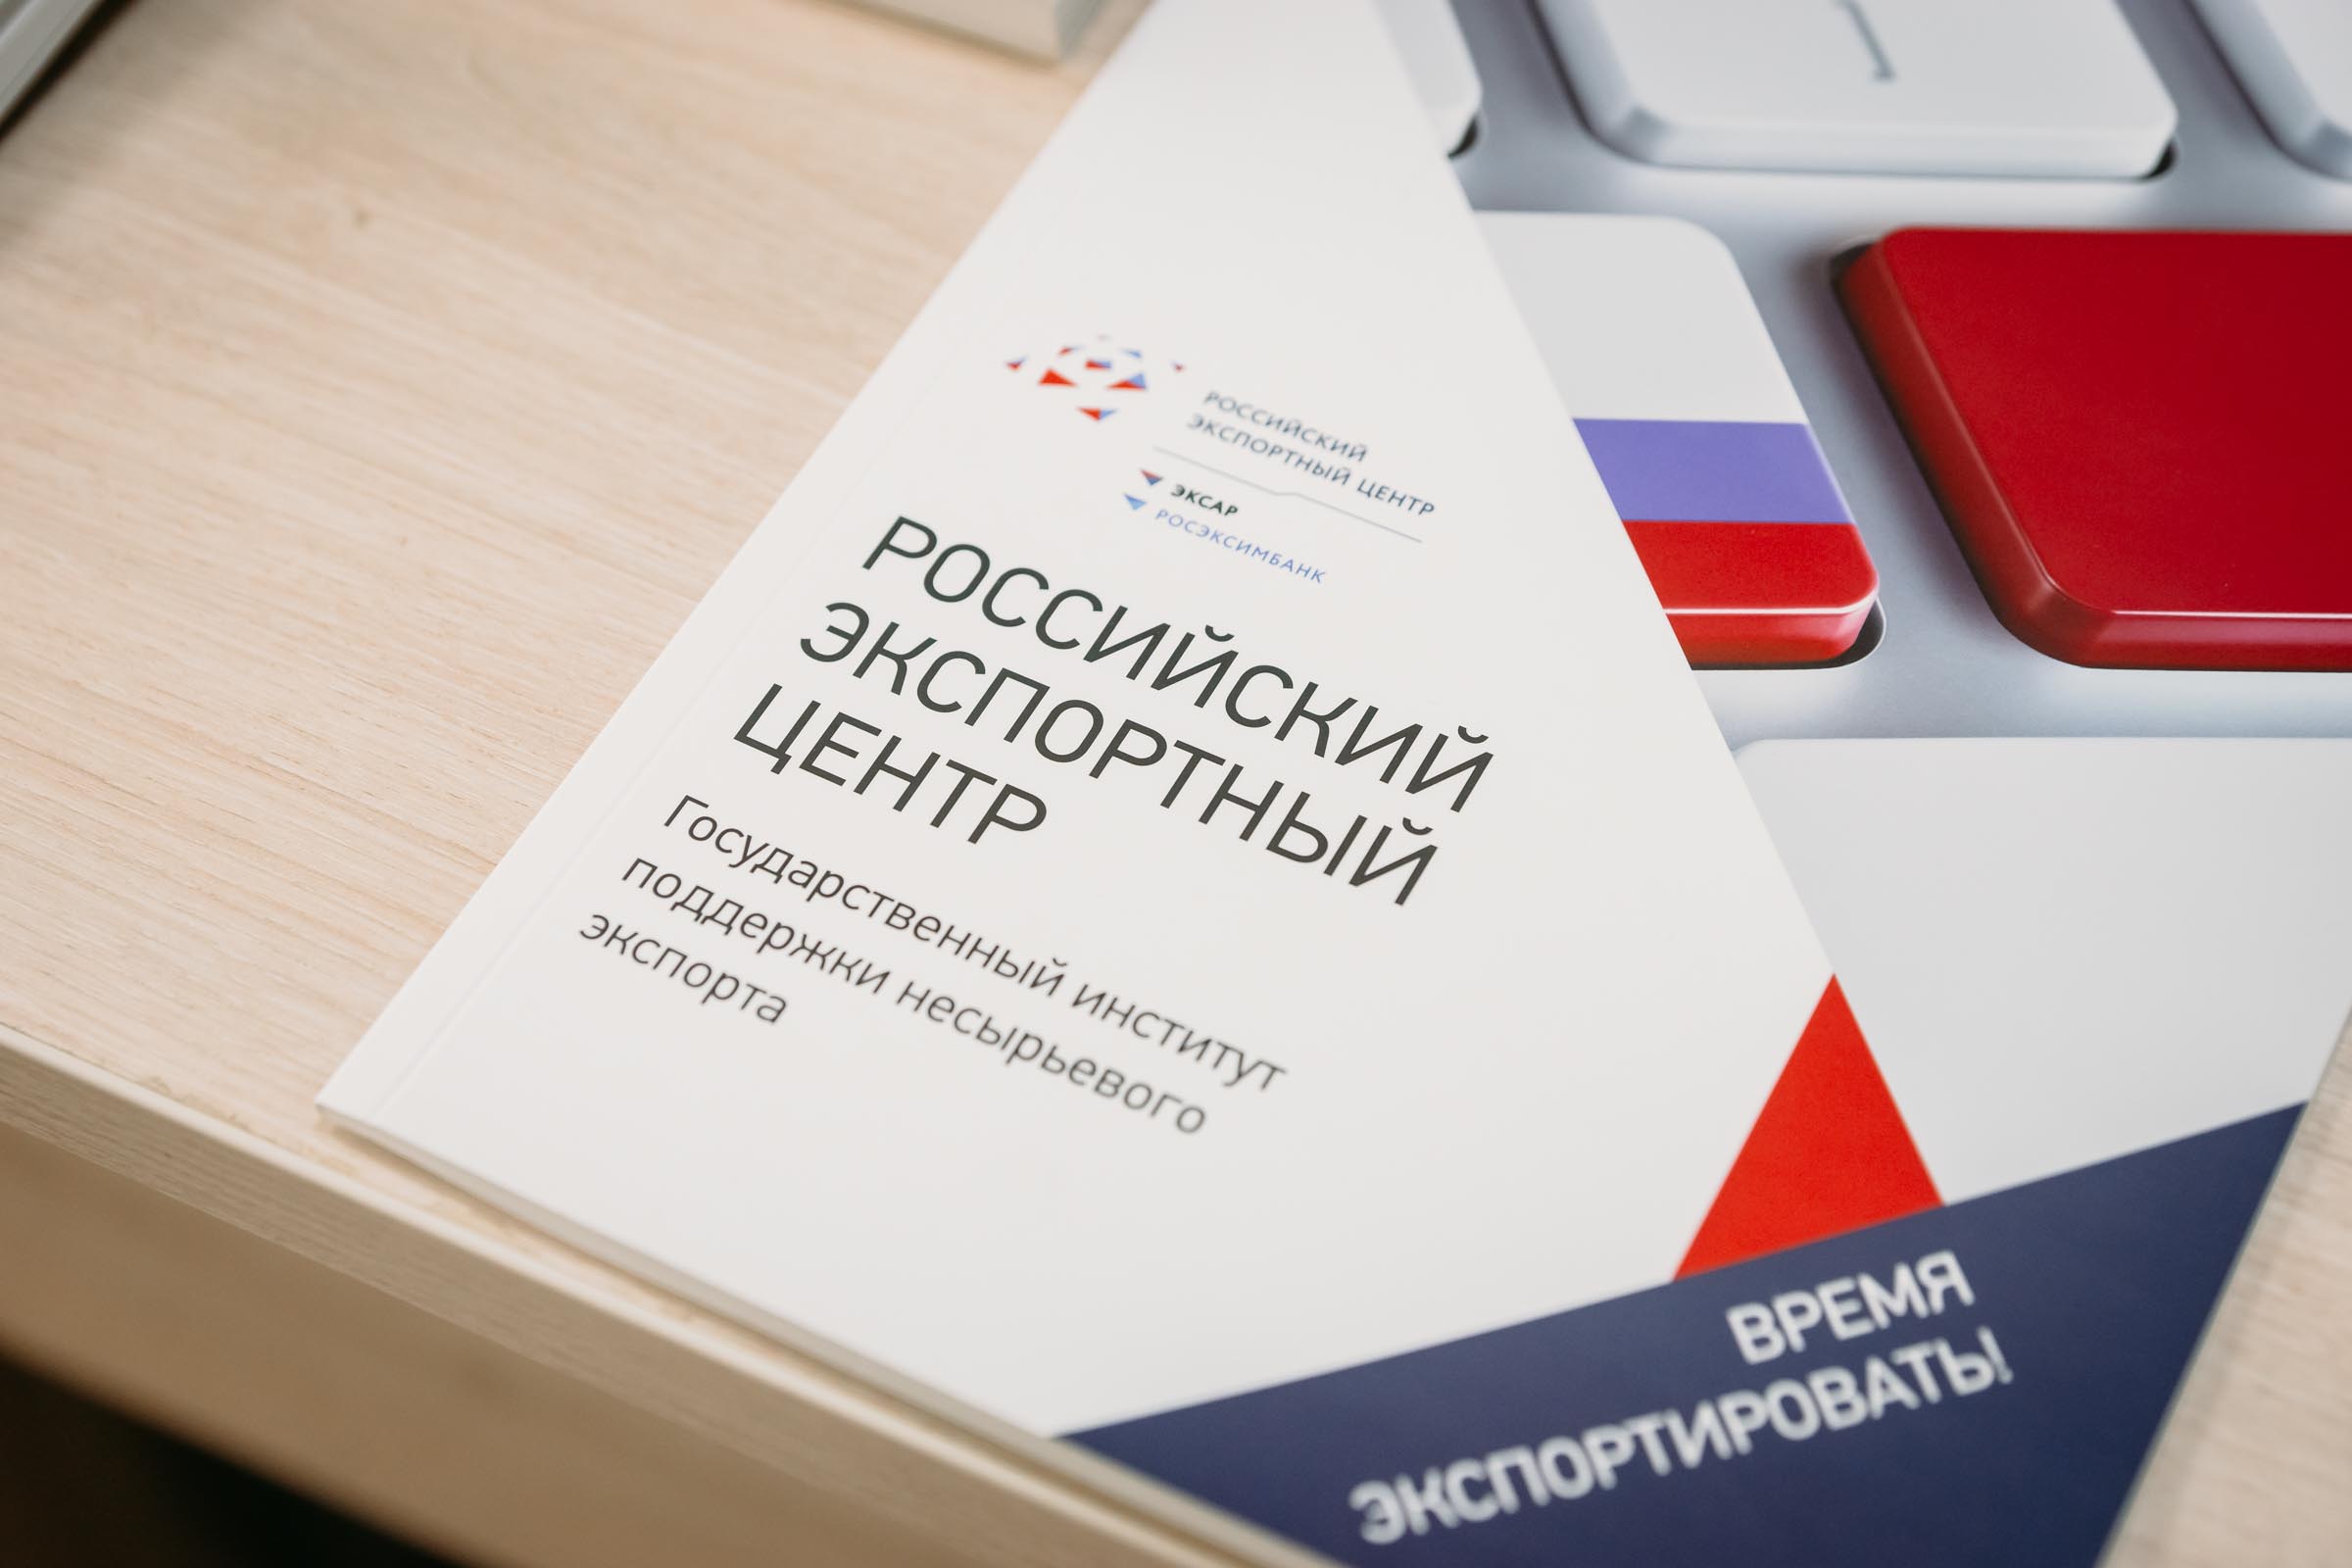 Российский экспортный центр открыл прием заявок на компенсацию затрат на патентование